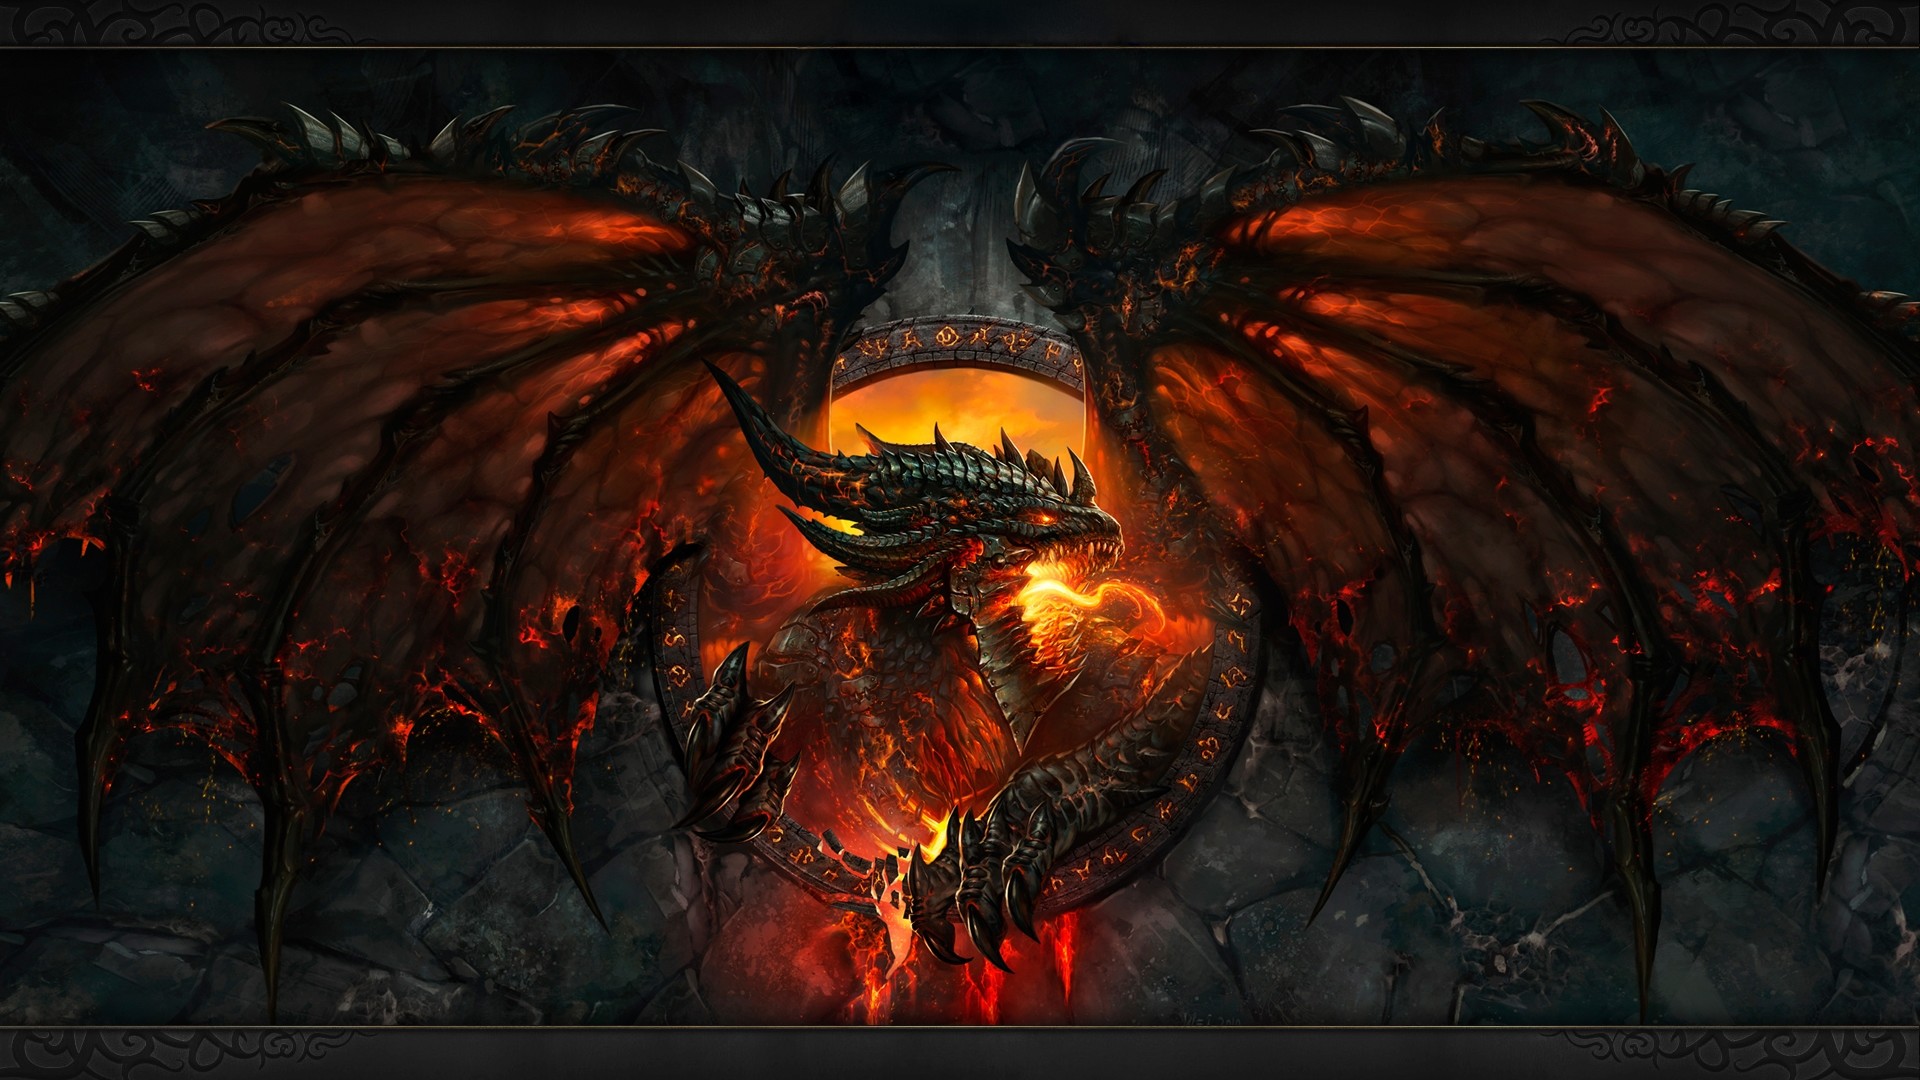 1920x1080 dragon wallpaper - Google Search